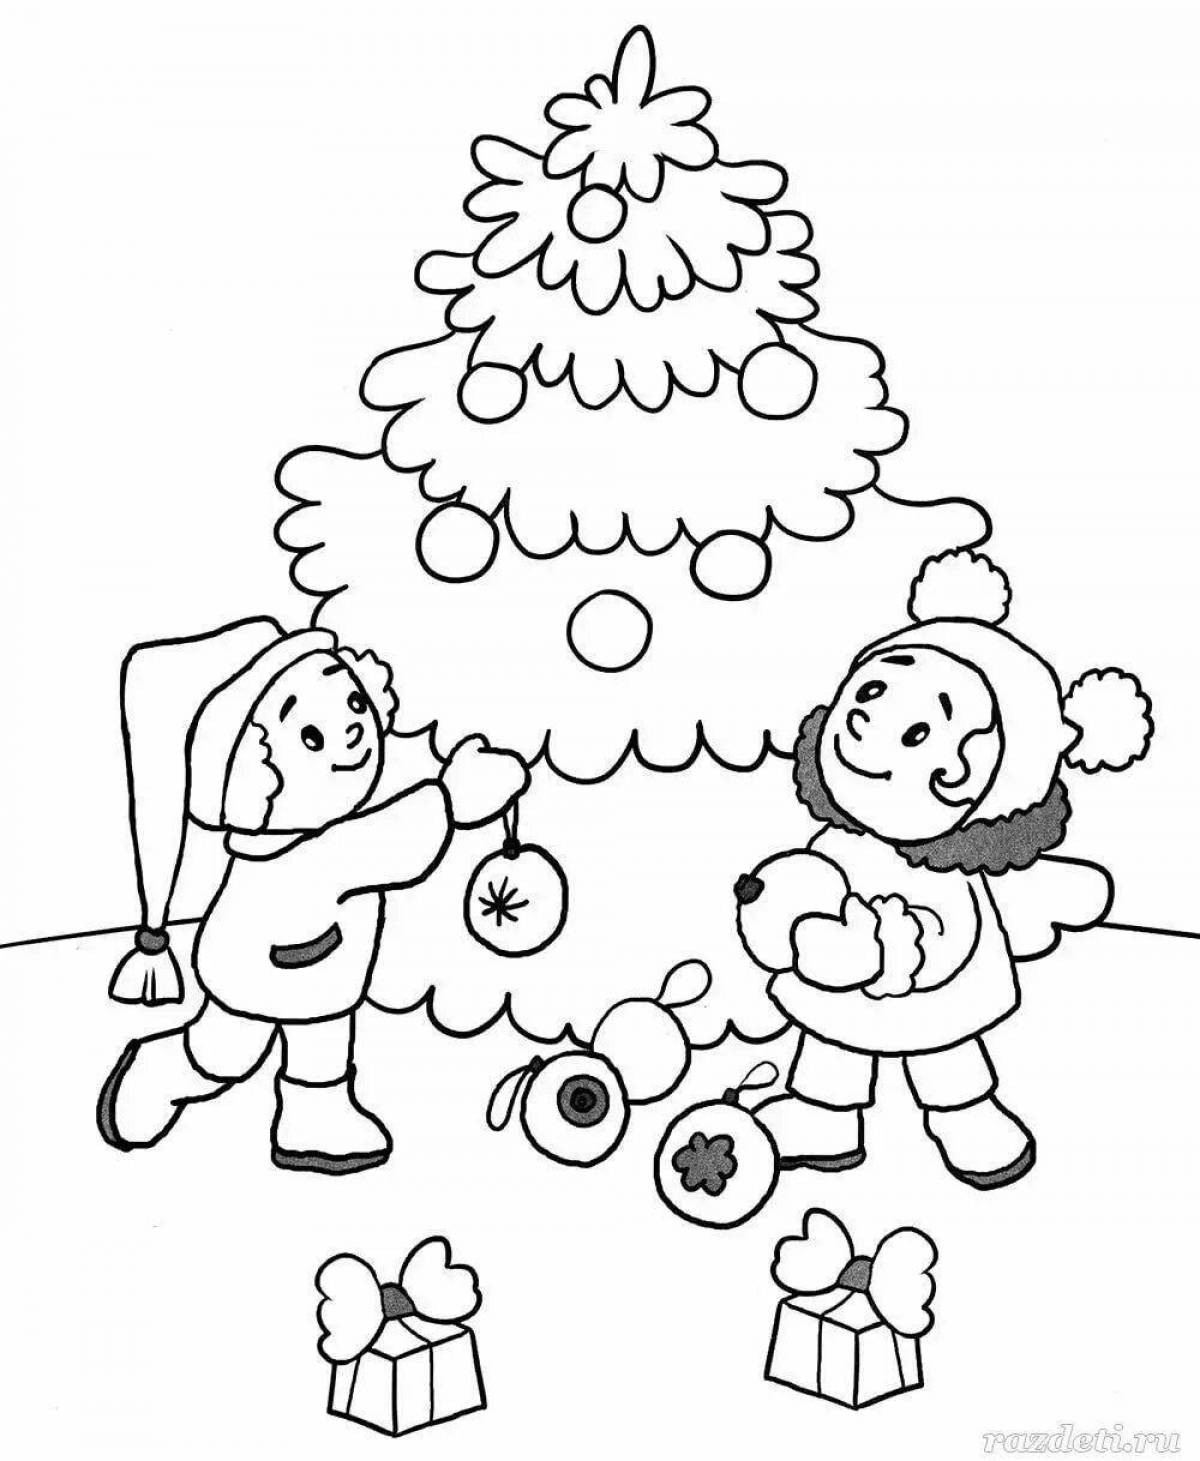 Glitter children's winter coloring book